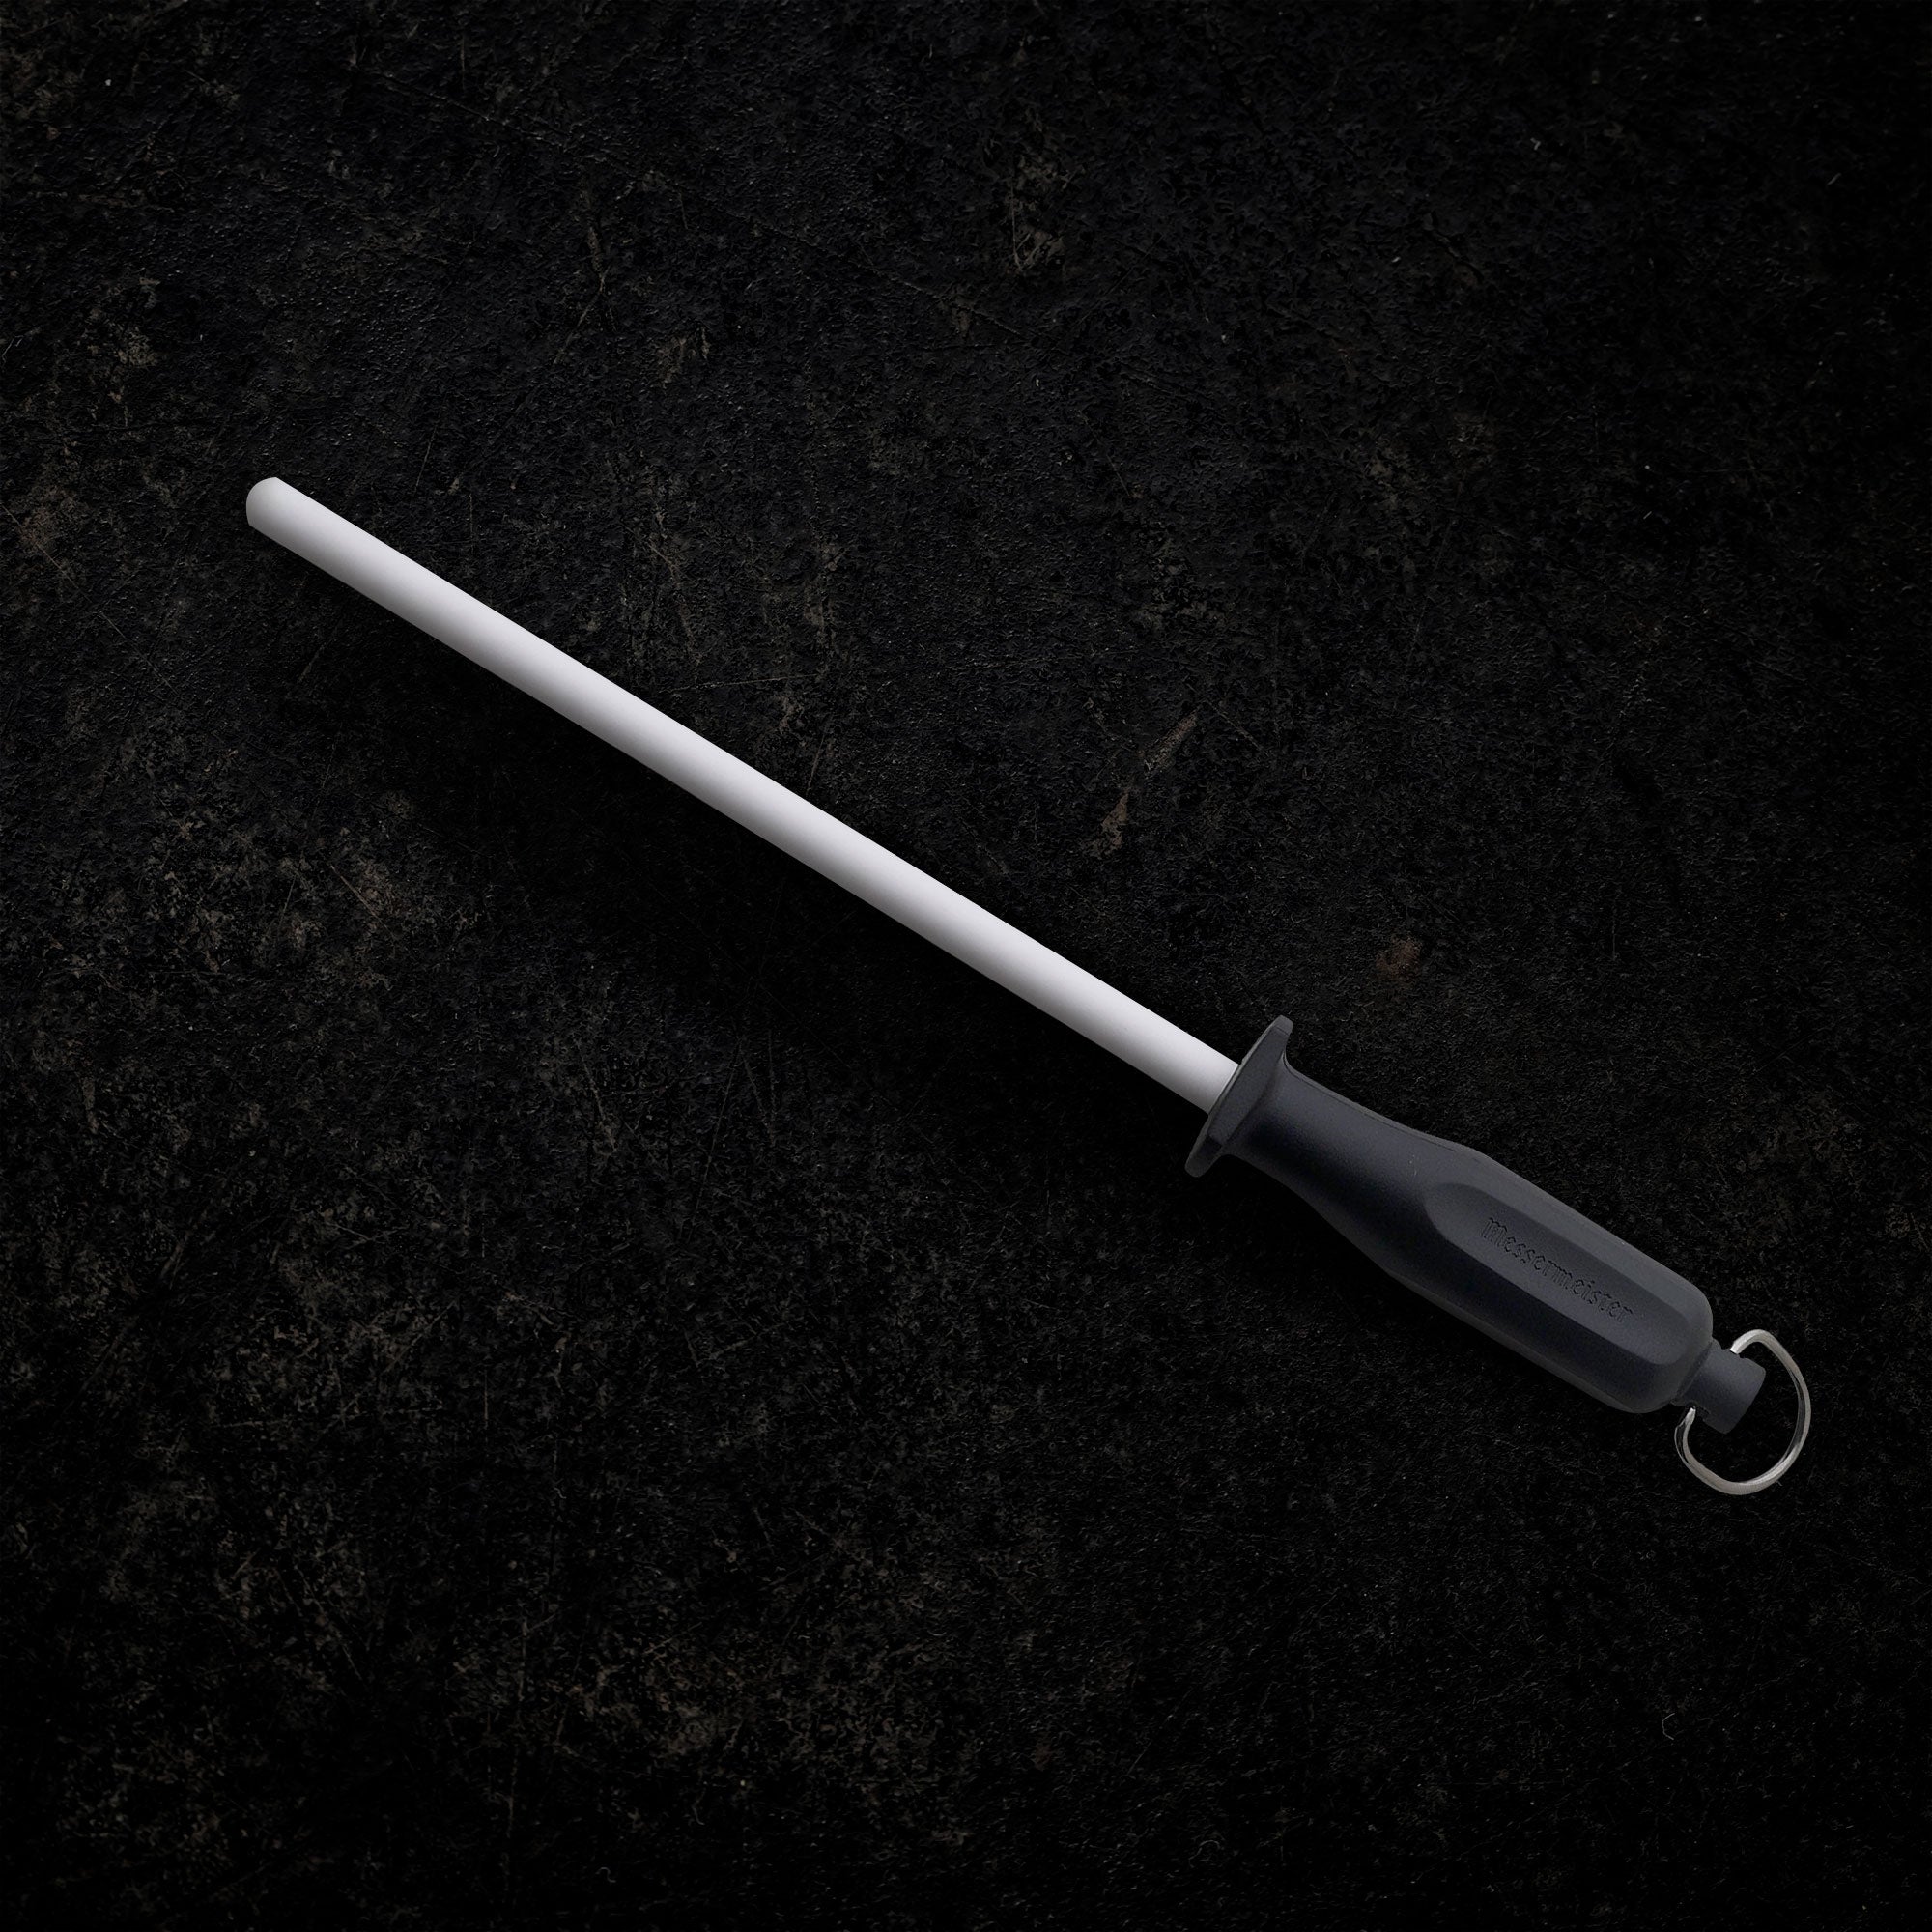 Knife set, 23 Pcs Kitchen Knife Set with Block & Sharpener Rod, High Carbon  S